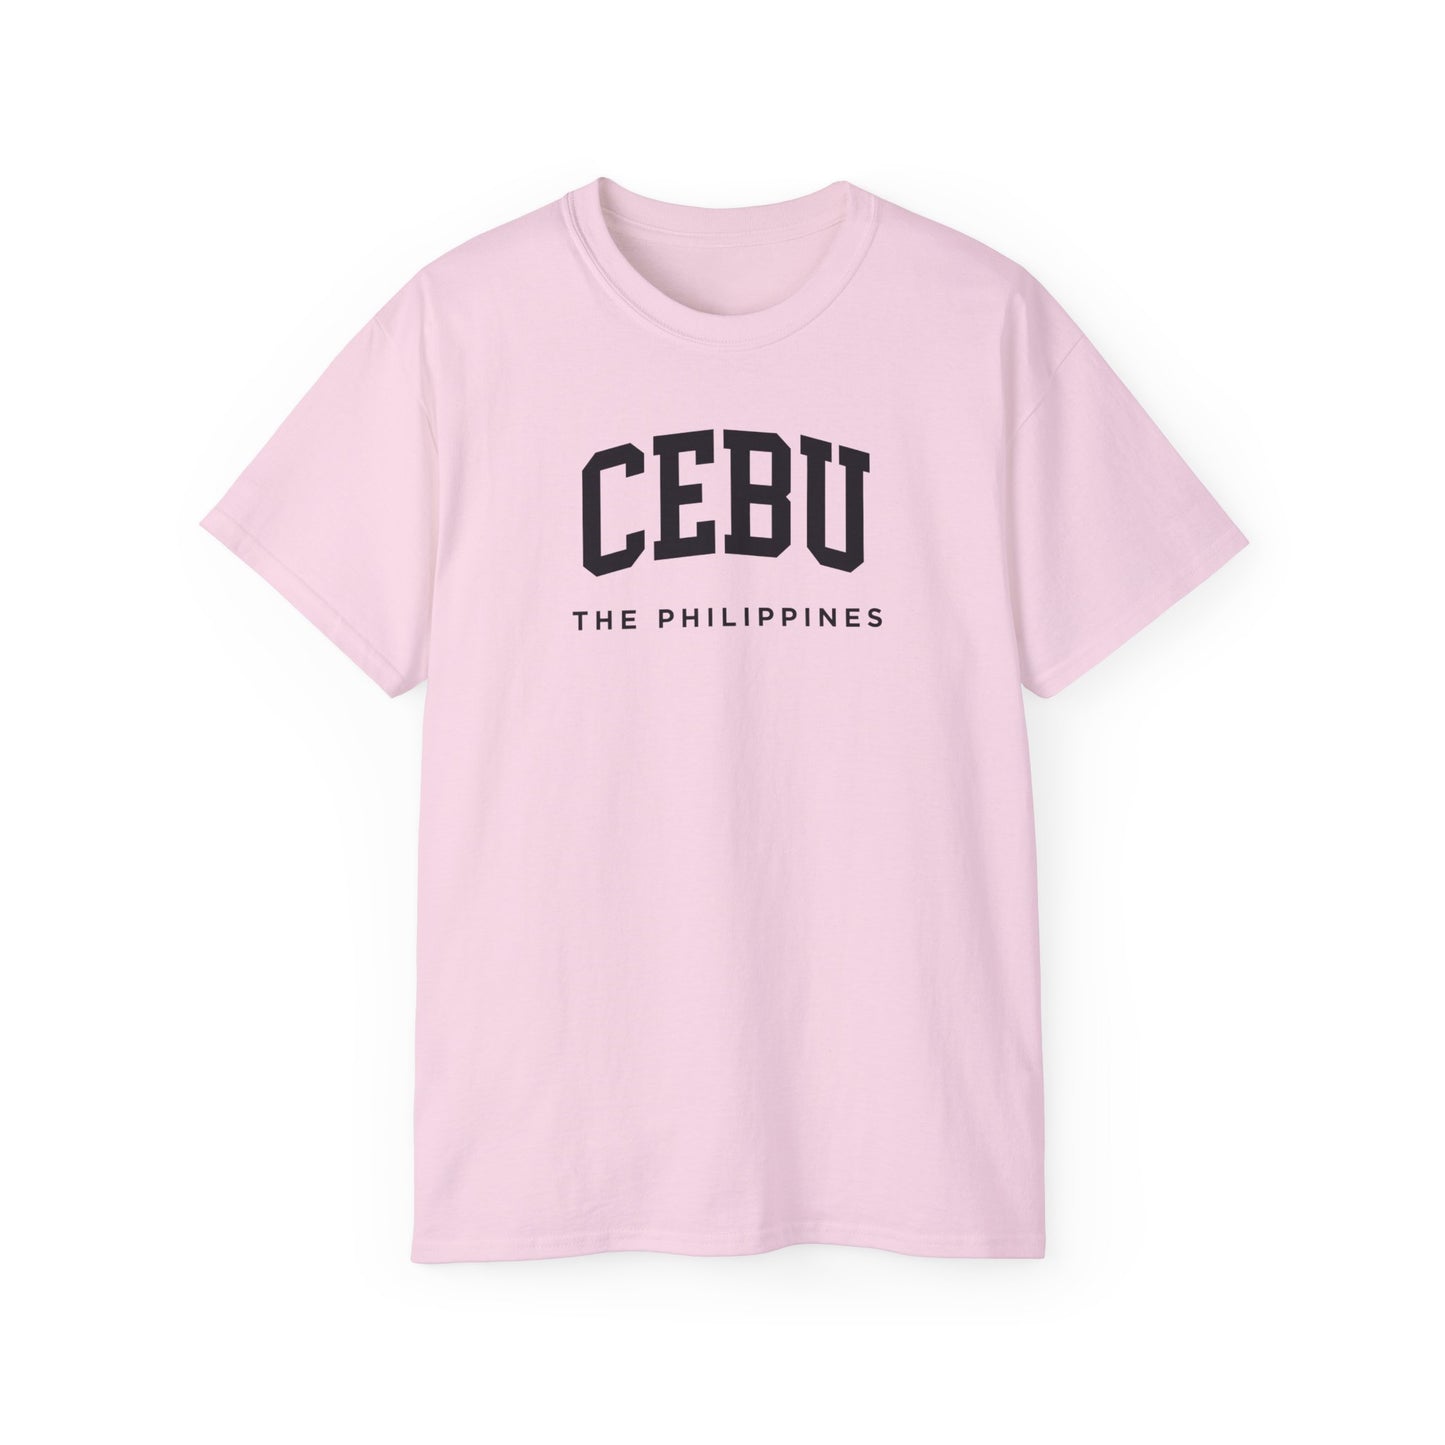 Cebu Philippines Tee